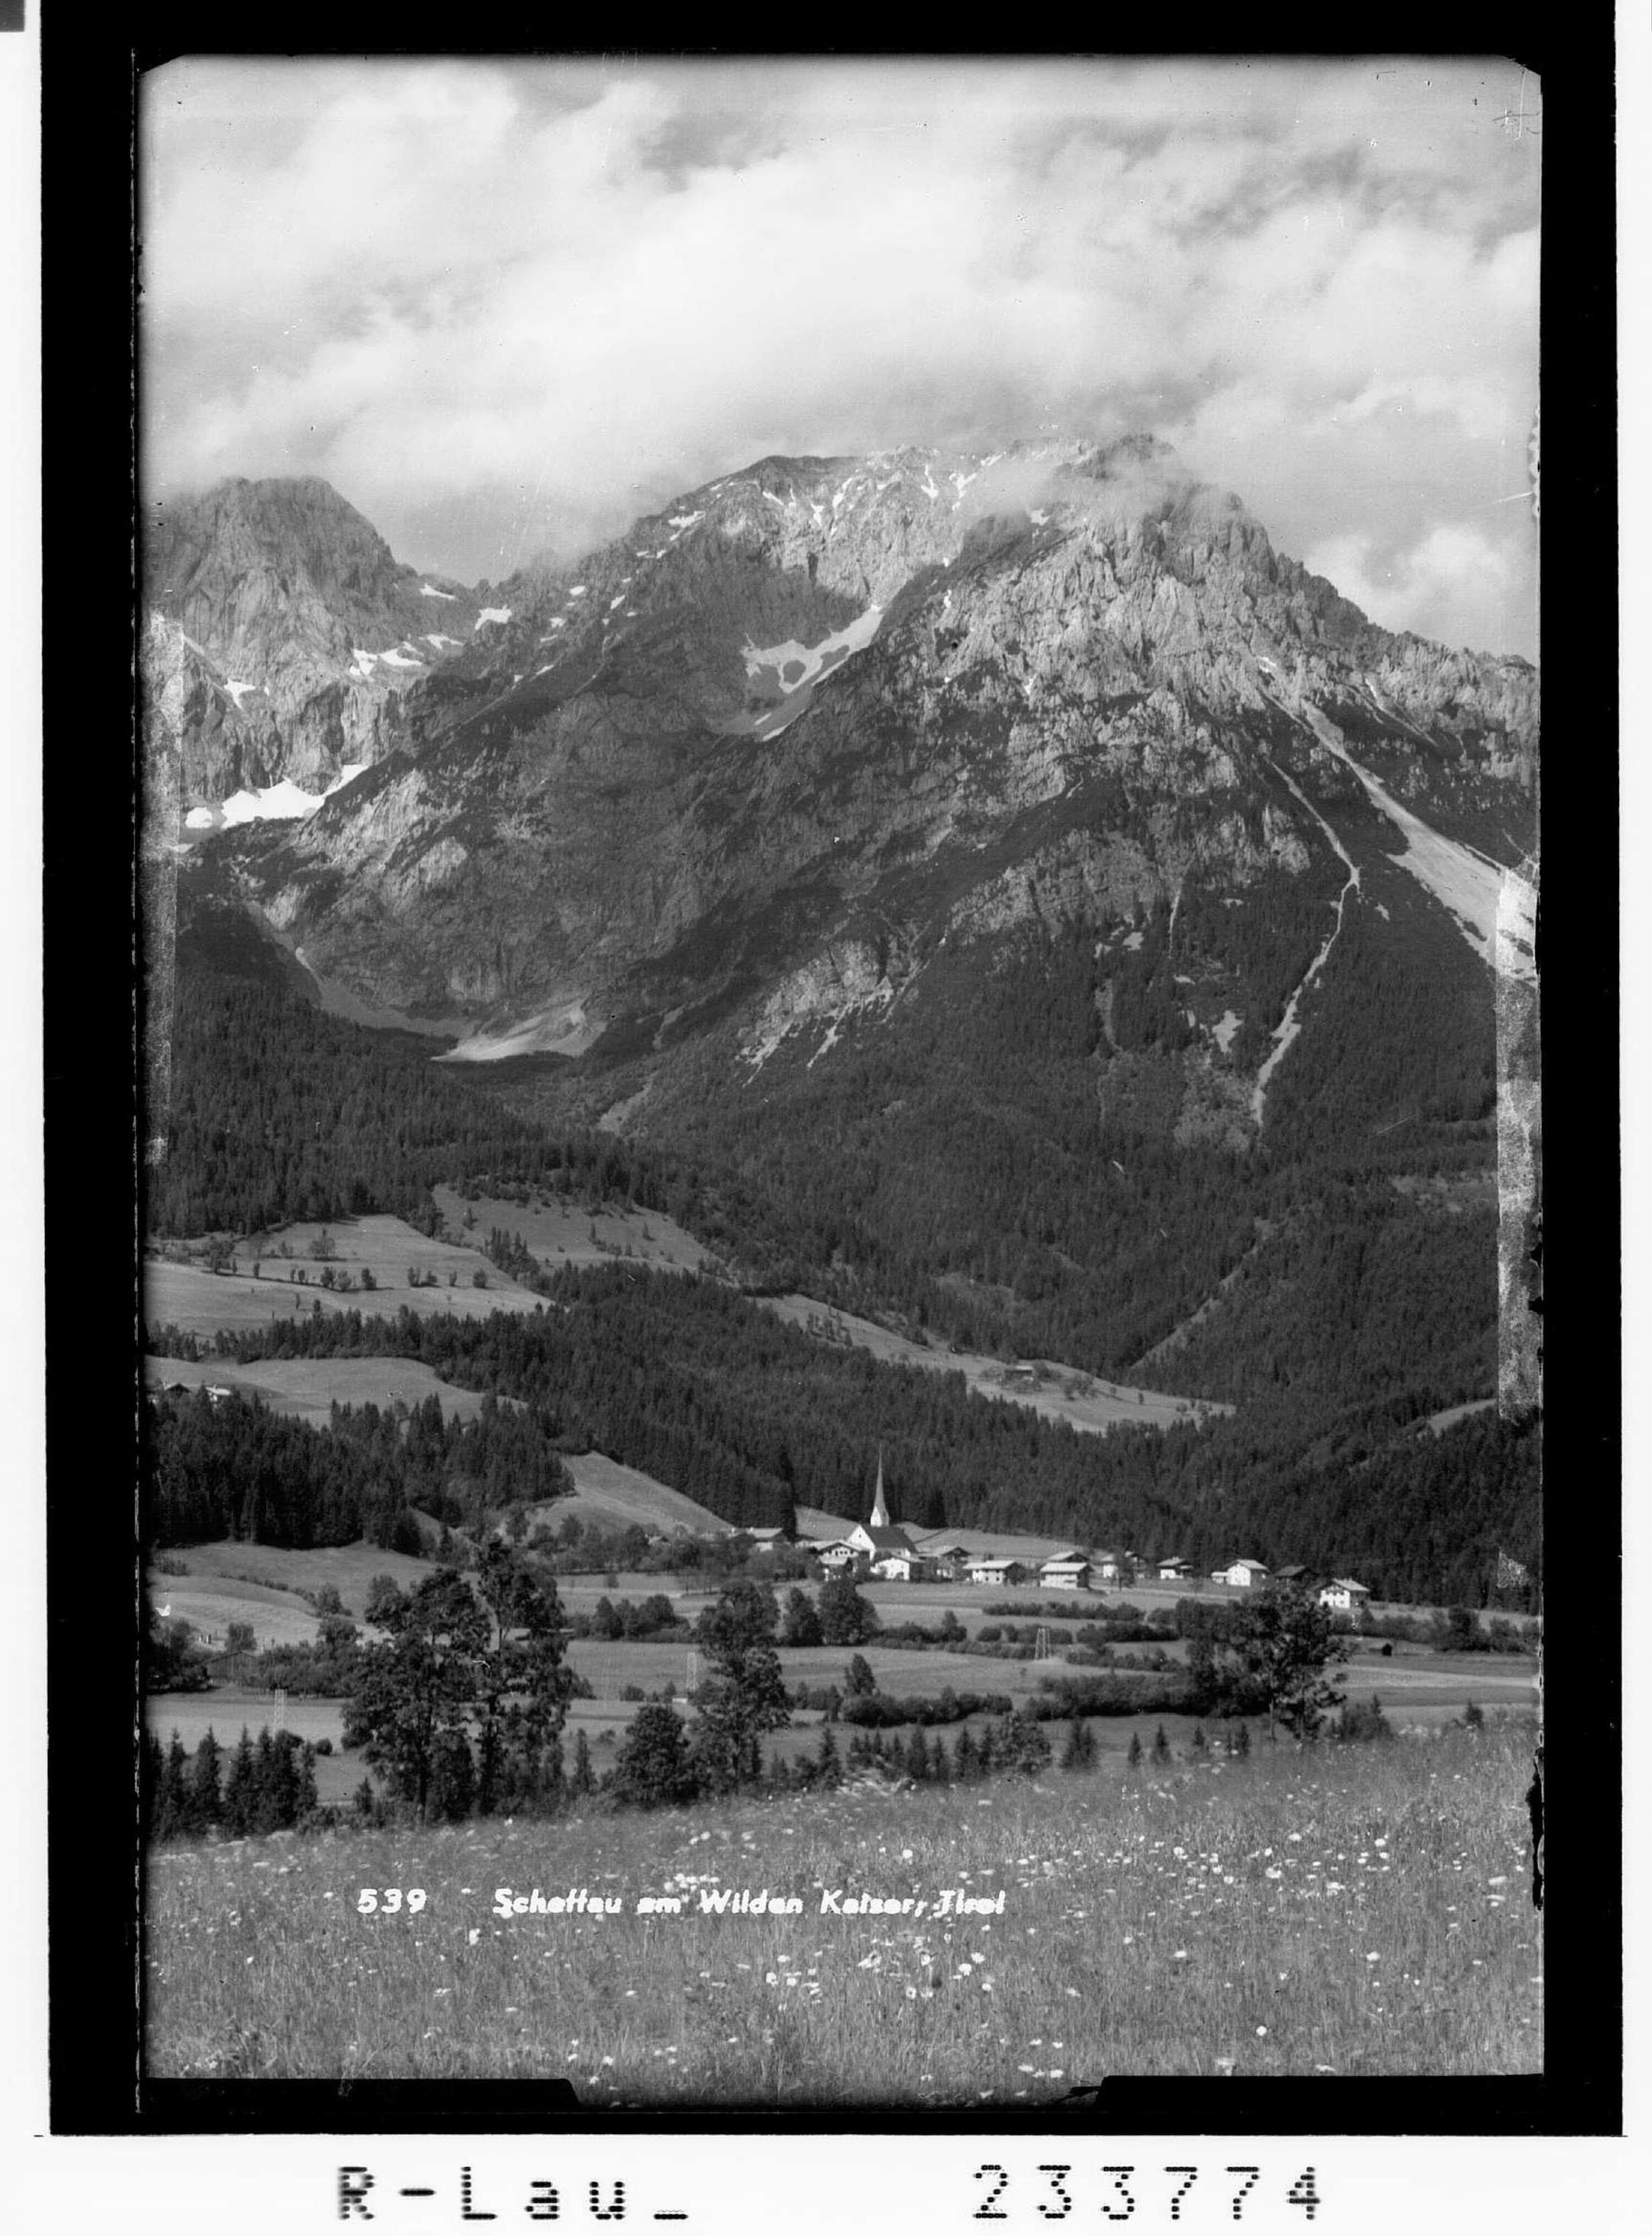 Scheffau am Wilden Kaiser, Tirol></div>


    <hr>
    <div class=